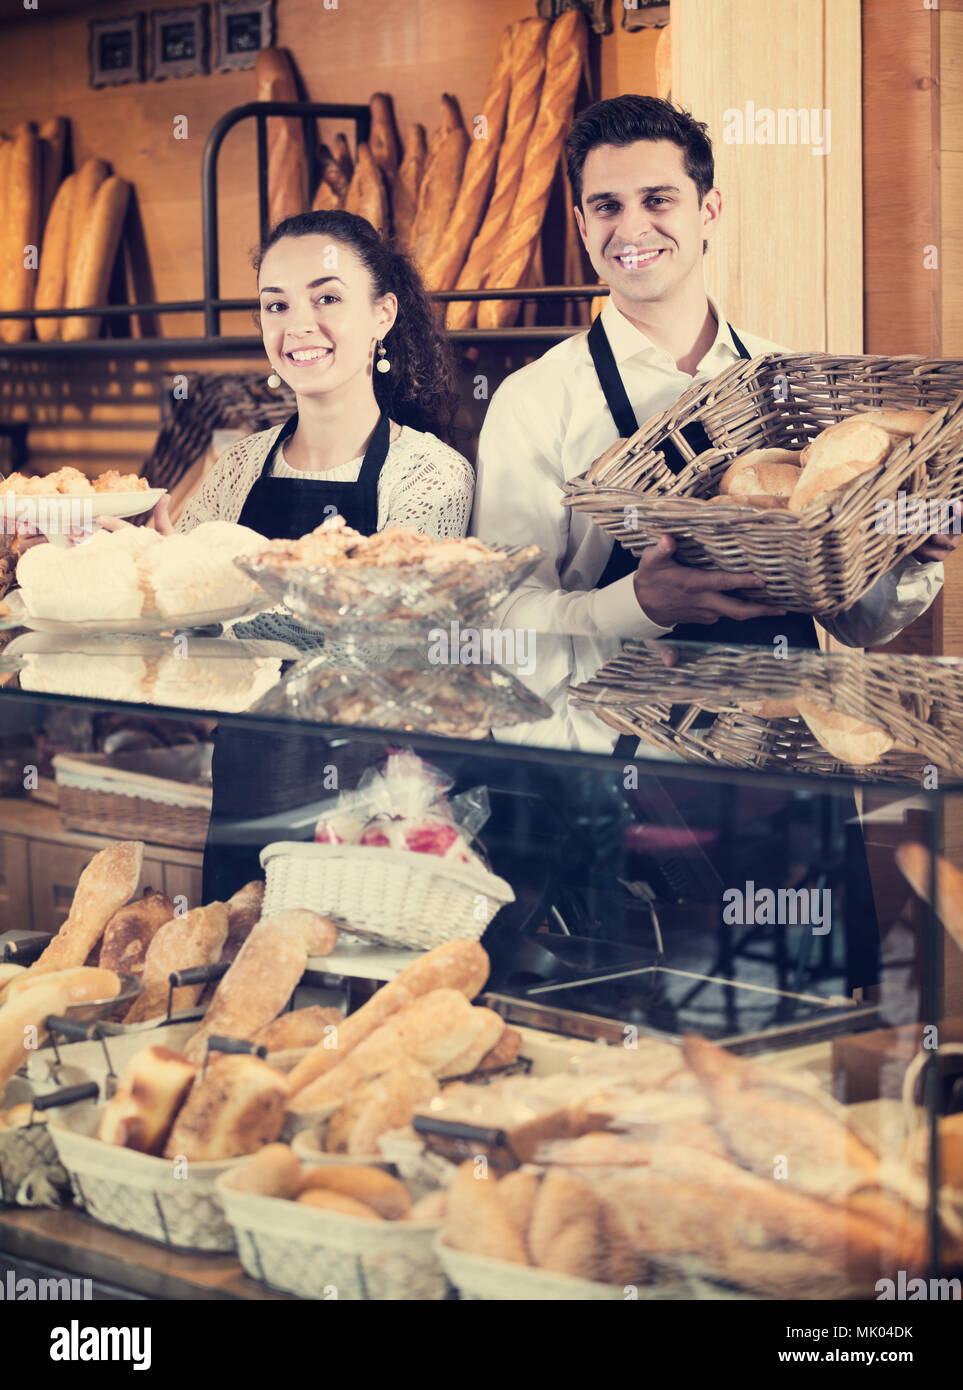 Le personnel vendeur attrayant offrant du pain et pâtisseries différentes à vendre Banque D'Images